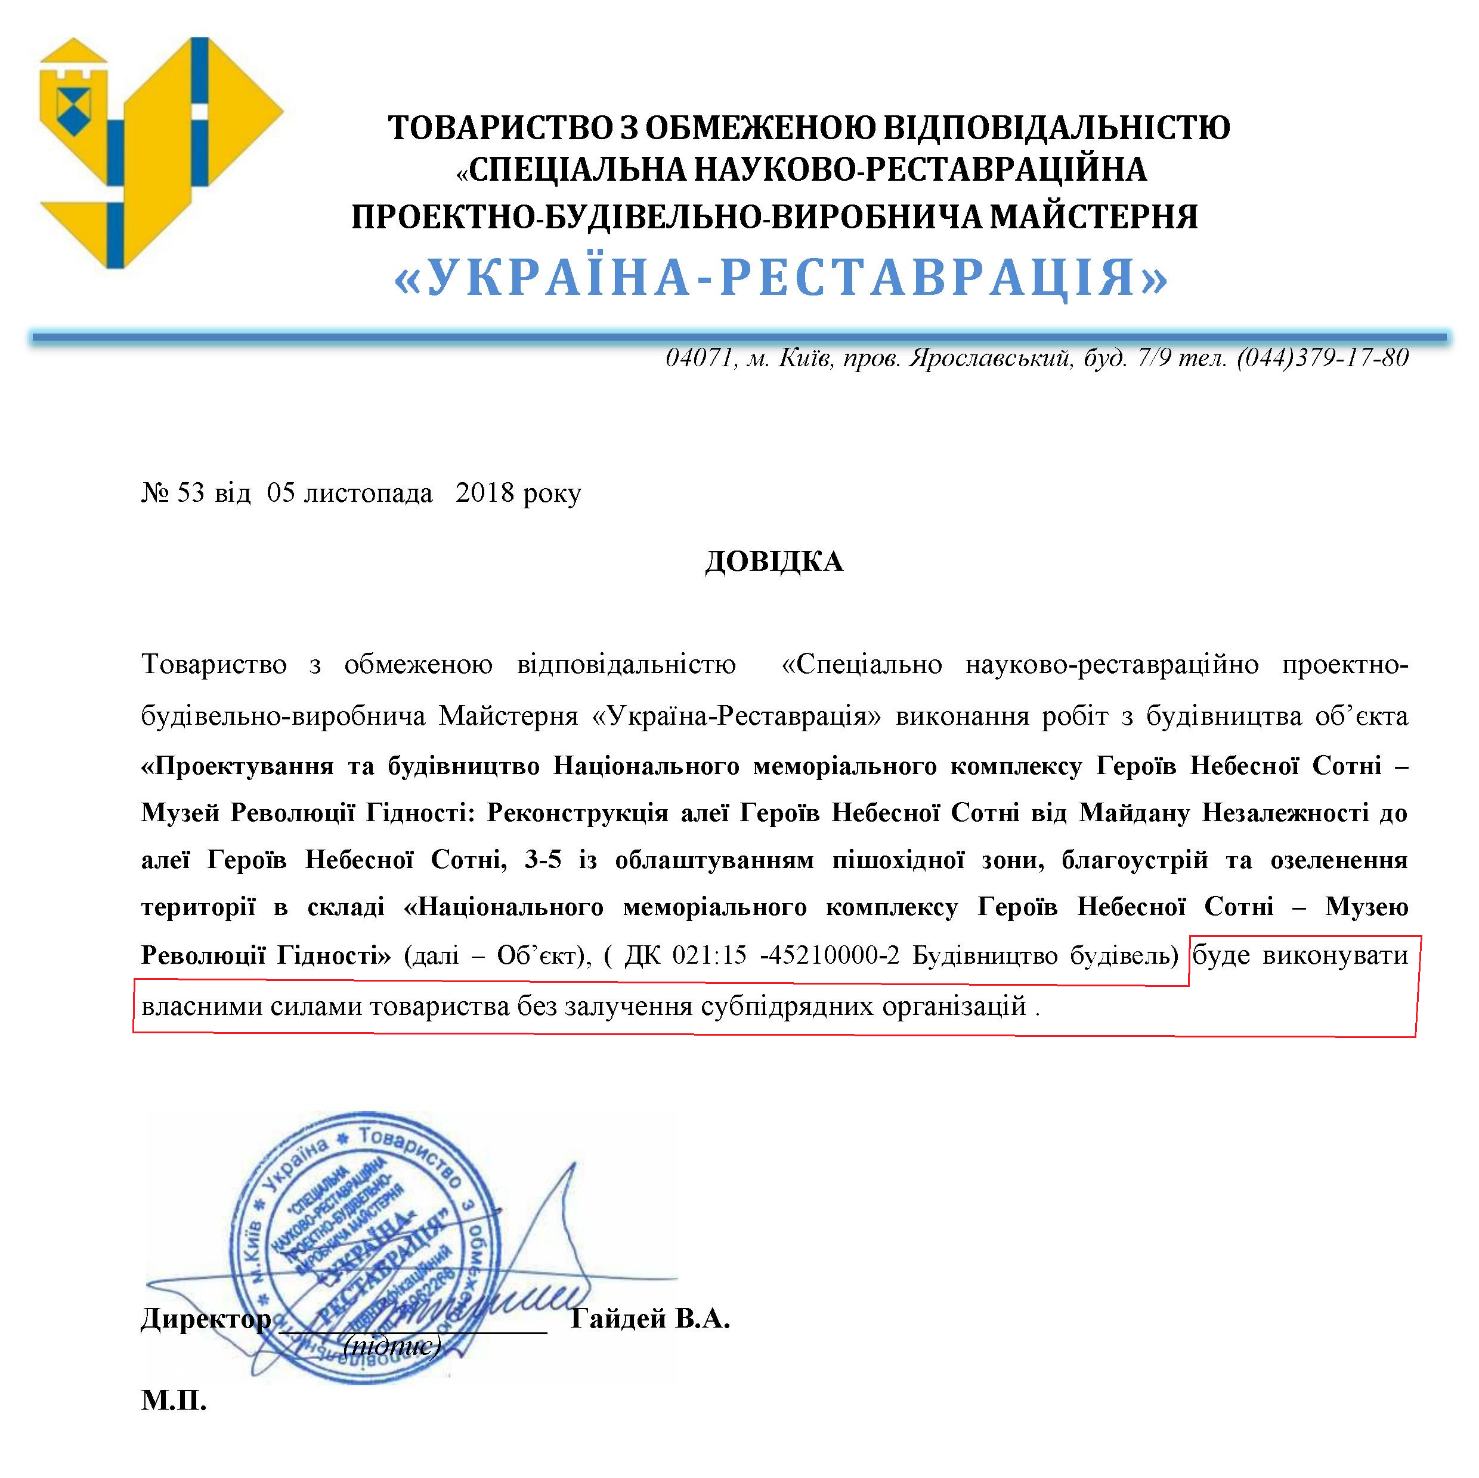 Привлекать к работе субподрядчиков "Мастерская "Украина-Реставрация" не планировала вообще